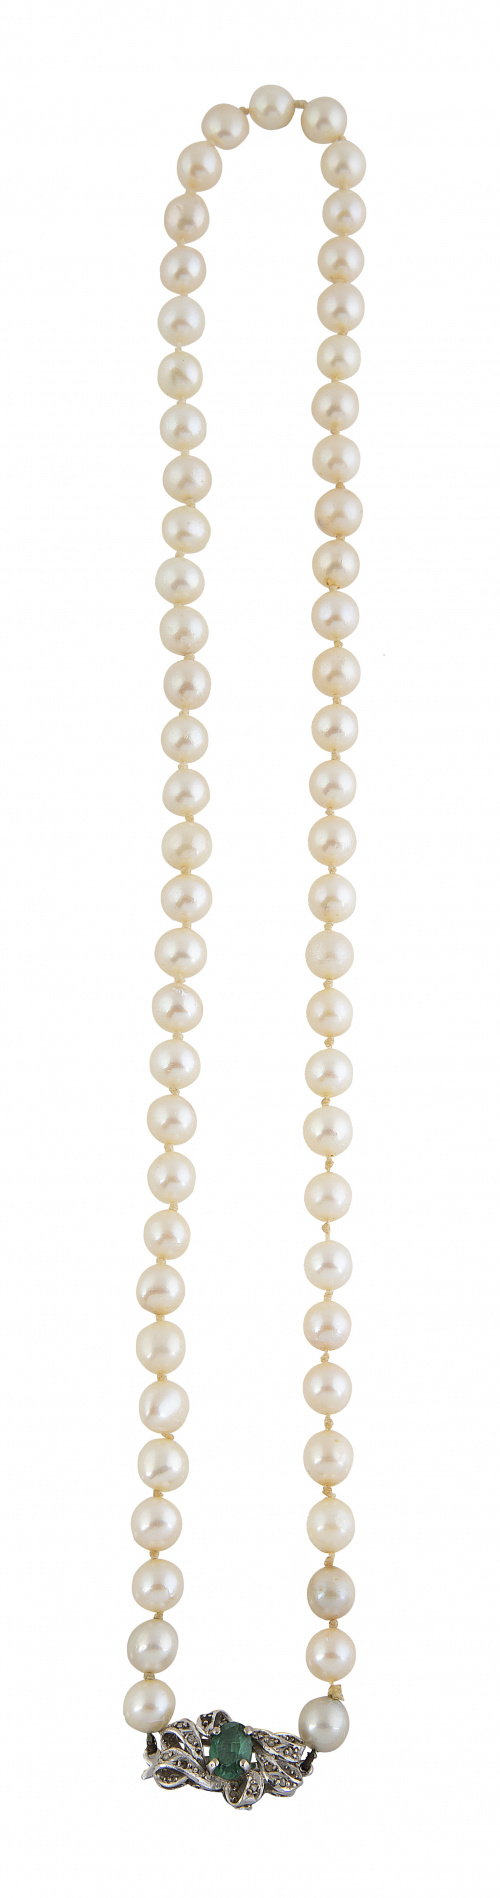 Collar de un hilo de perlas cultivadas con cierre en oro bl